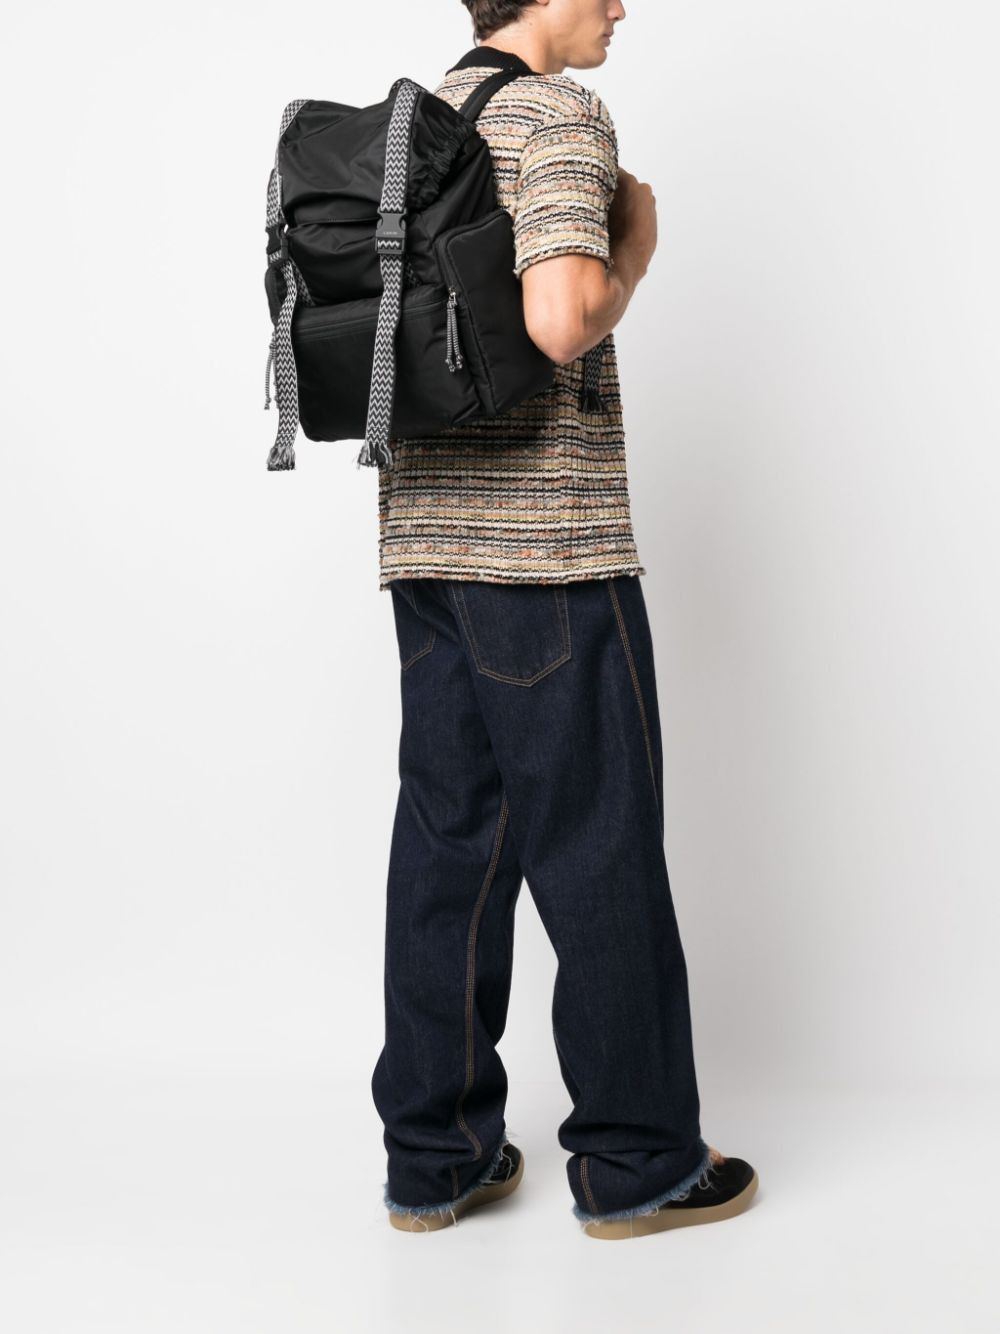 LANVIN Sleek Black Curb Backpack for Men